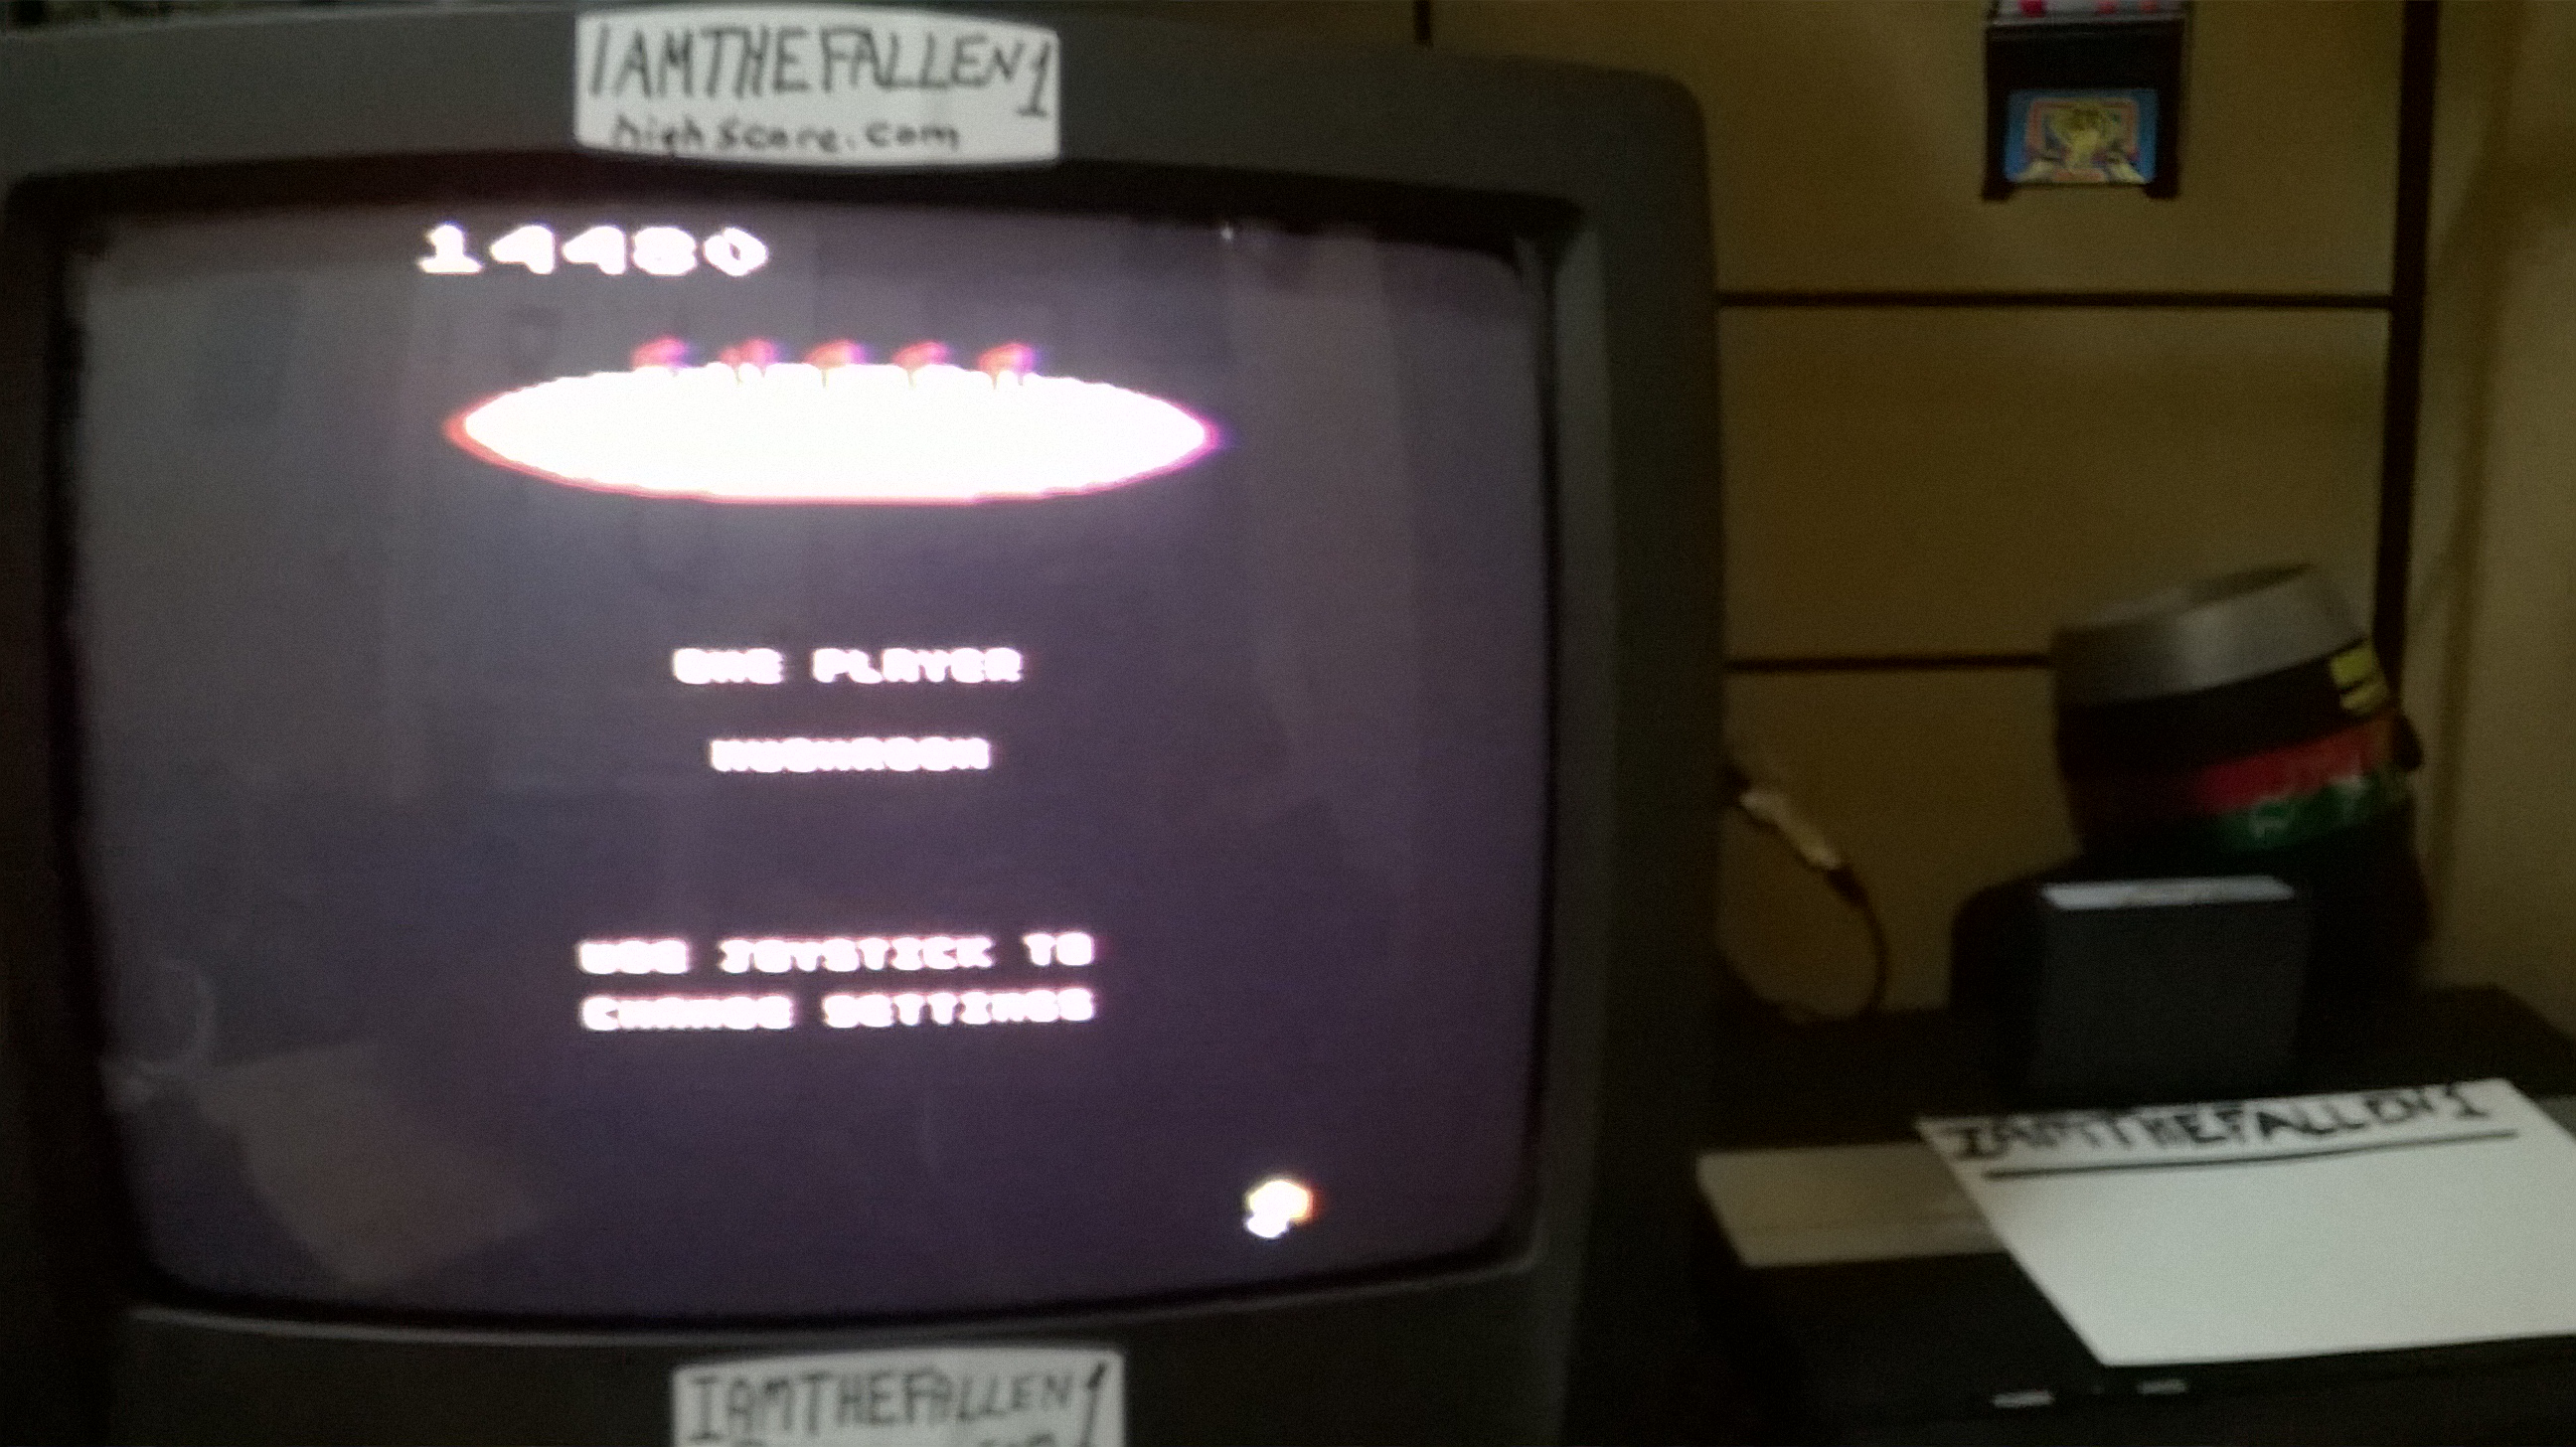 iamthefallen1: Super Pac-Man: Mushroom Start (Atari 7800) 14,480 points on 2018-02-21 19:26:38